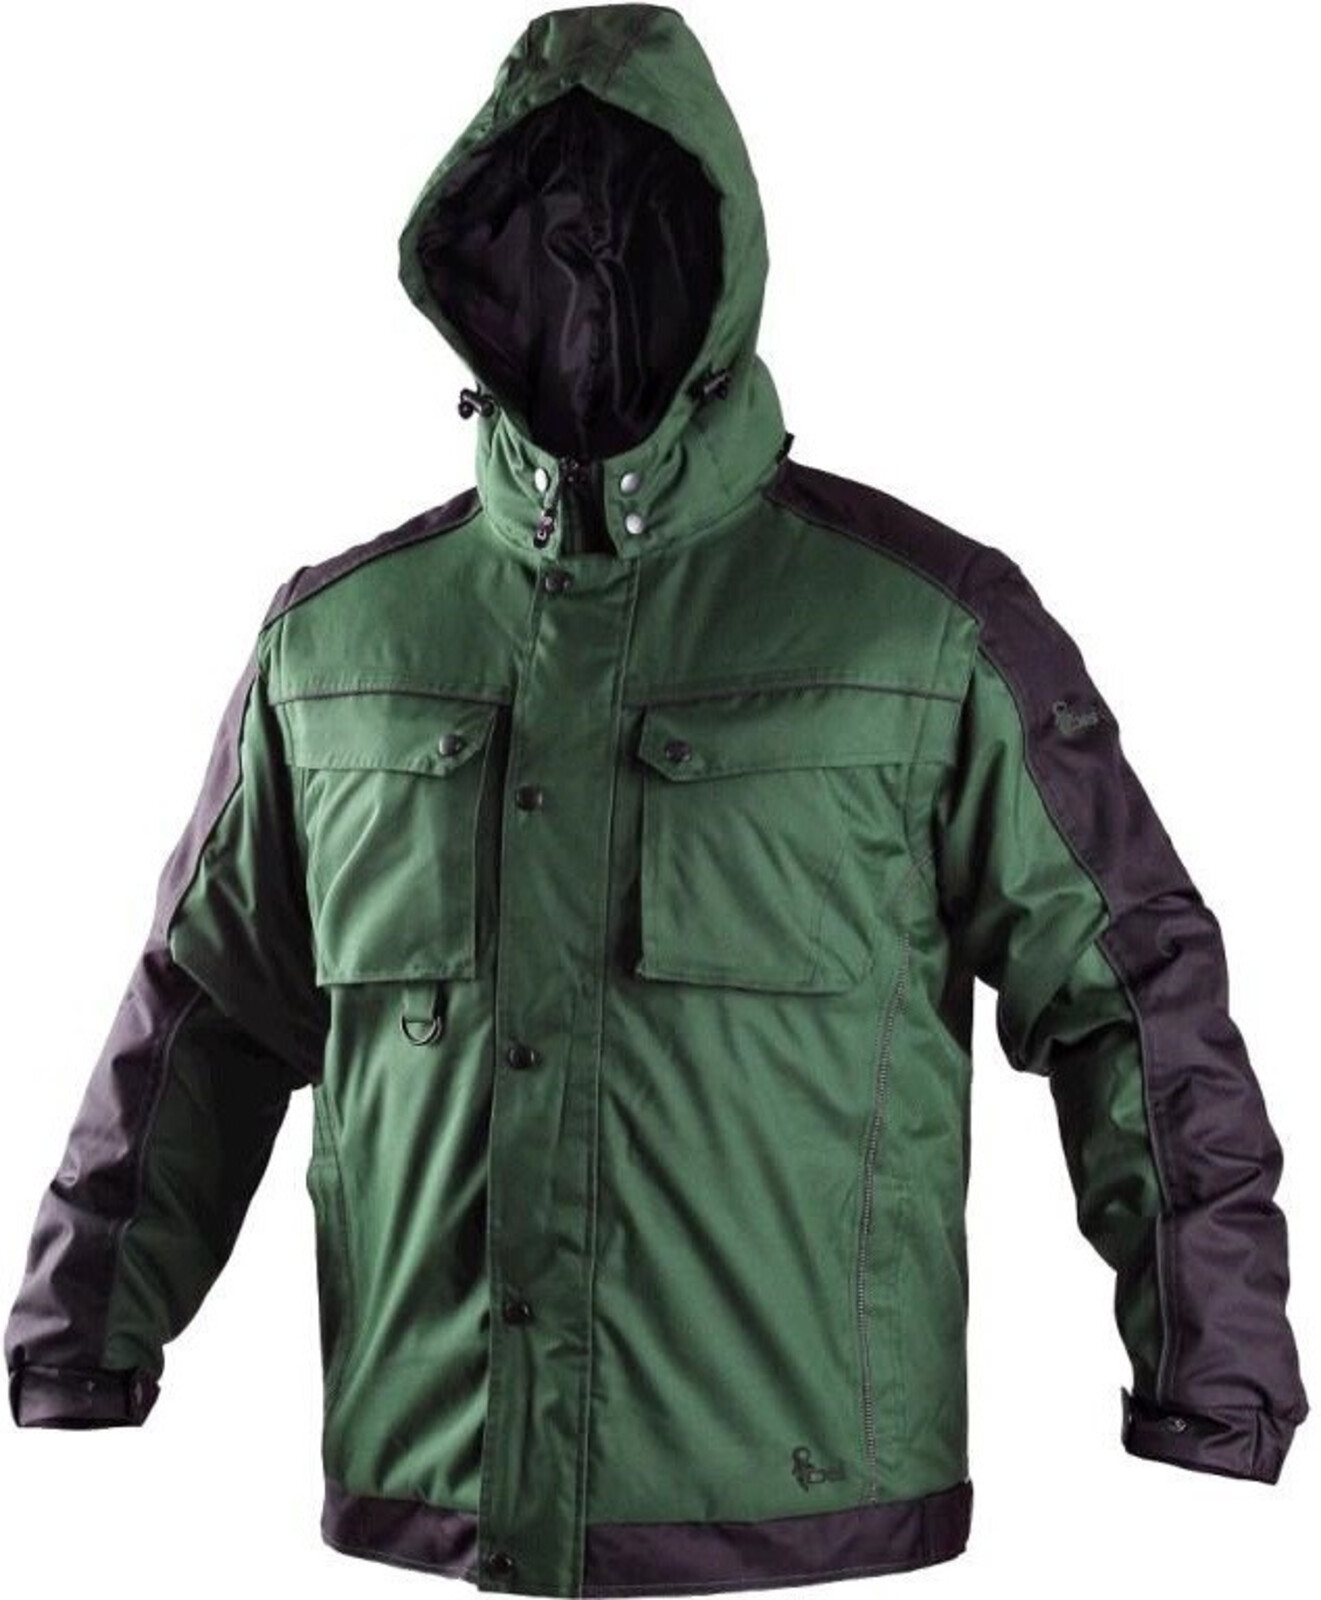 Pánska zimná bunda CXS Irvine 2v1 - veľkosť: M, farba: zelená/čierna